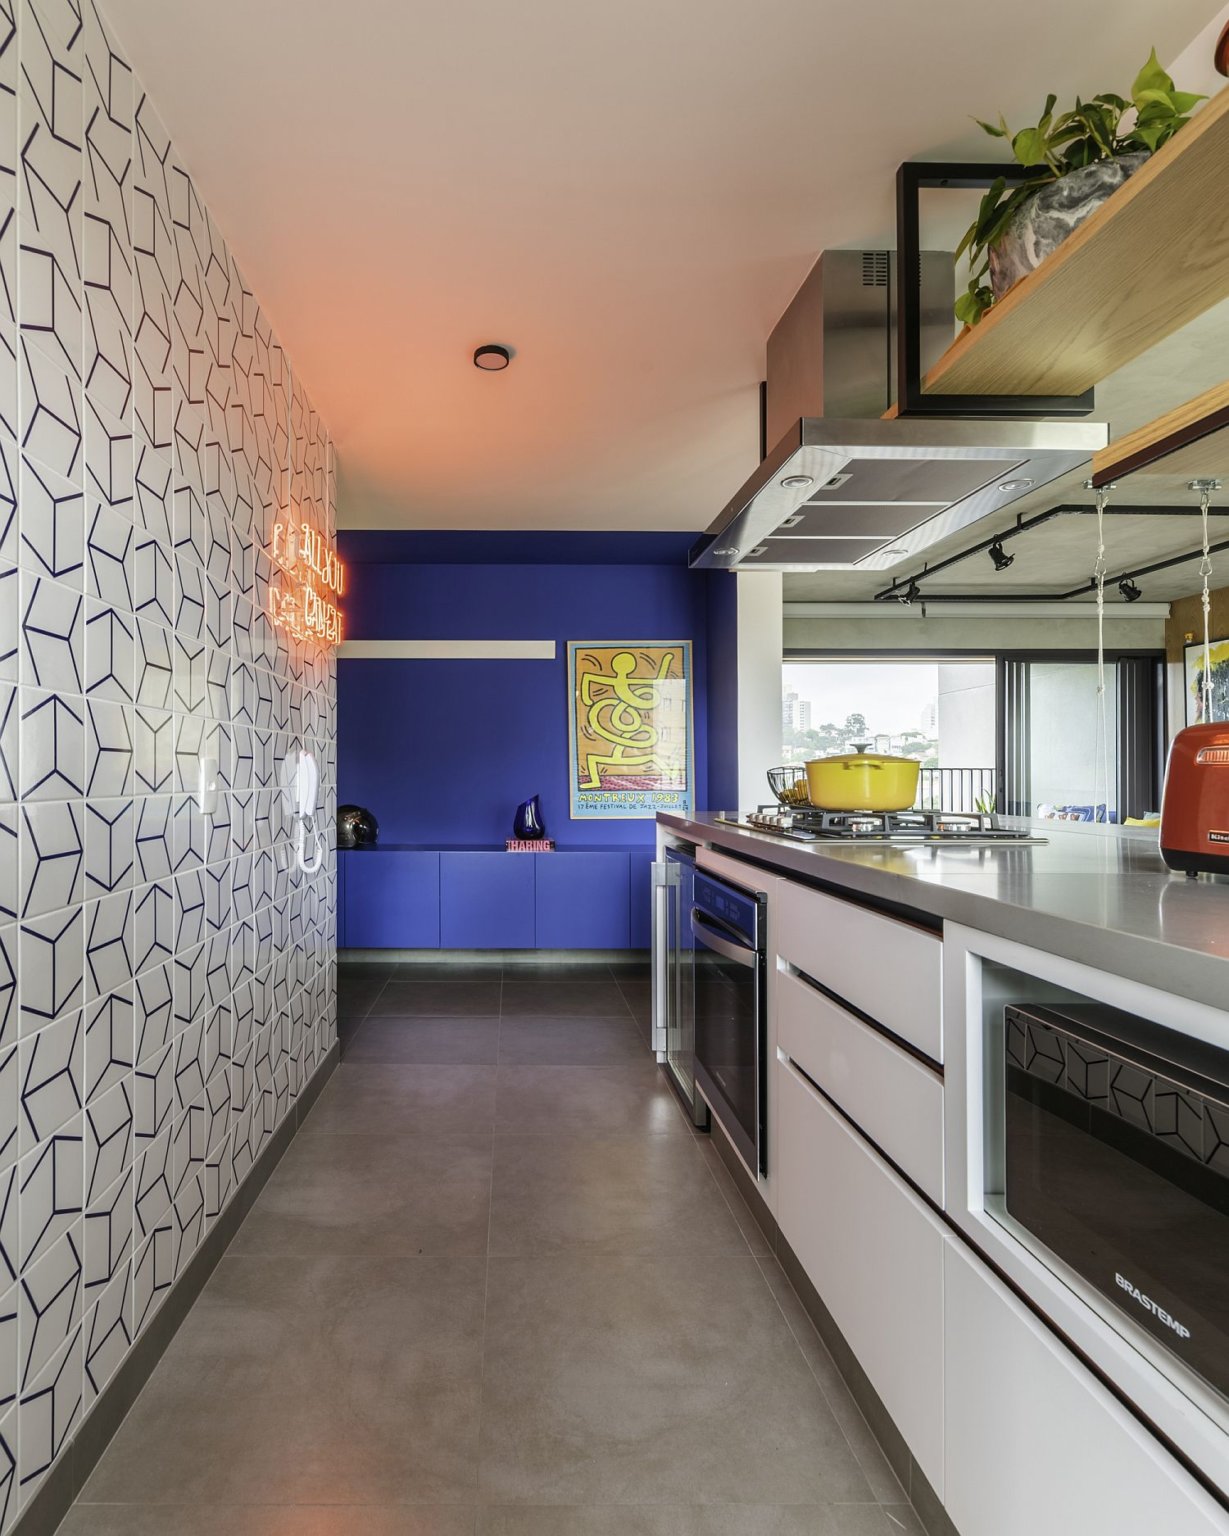 Hình ảnh cận cảnh phòng bếp hiện đại, đầy đủ tiện nghi trong căn hộ với bức tường ốp gạch men họa tiết hình học